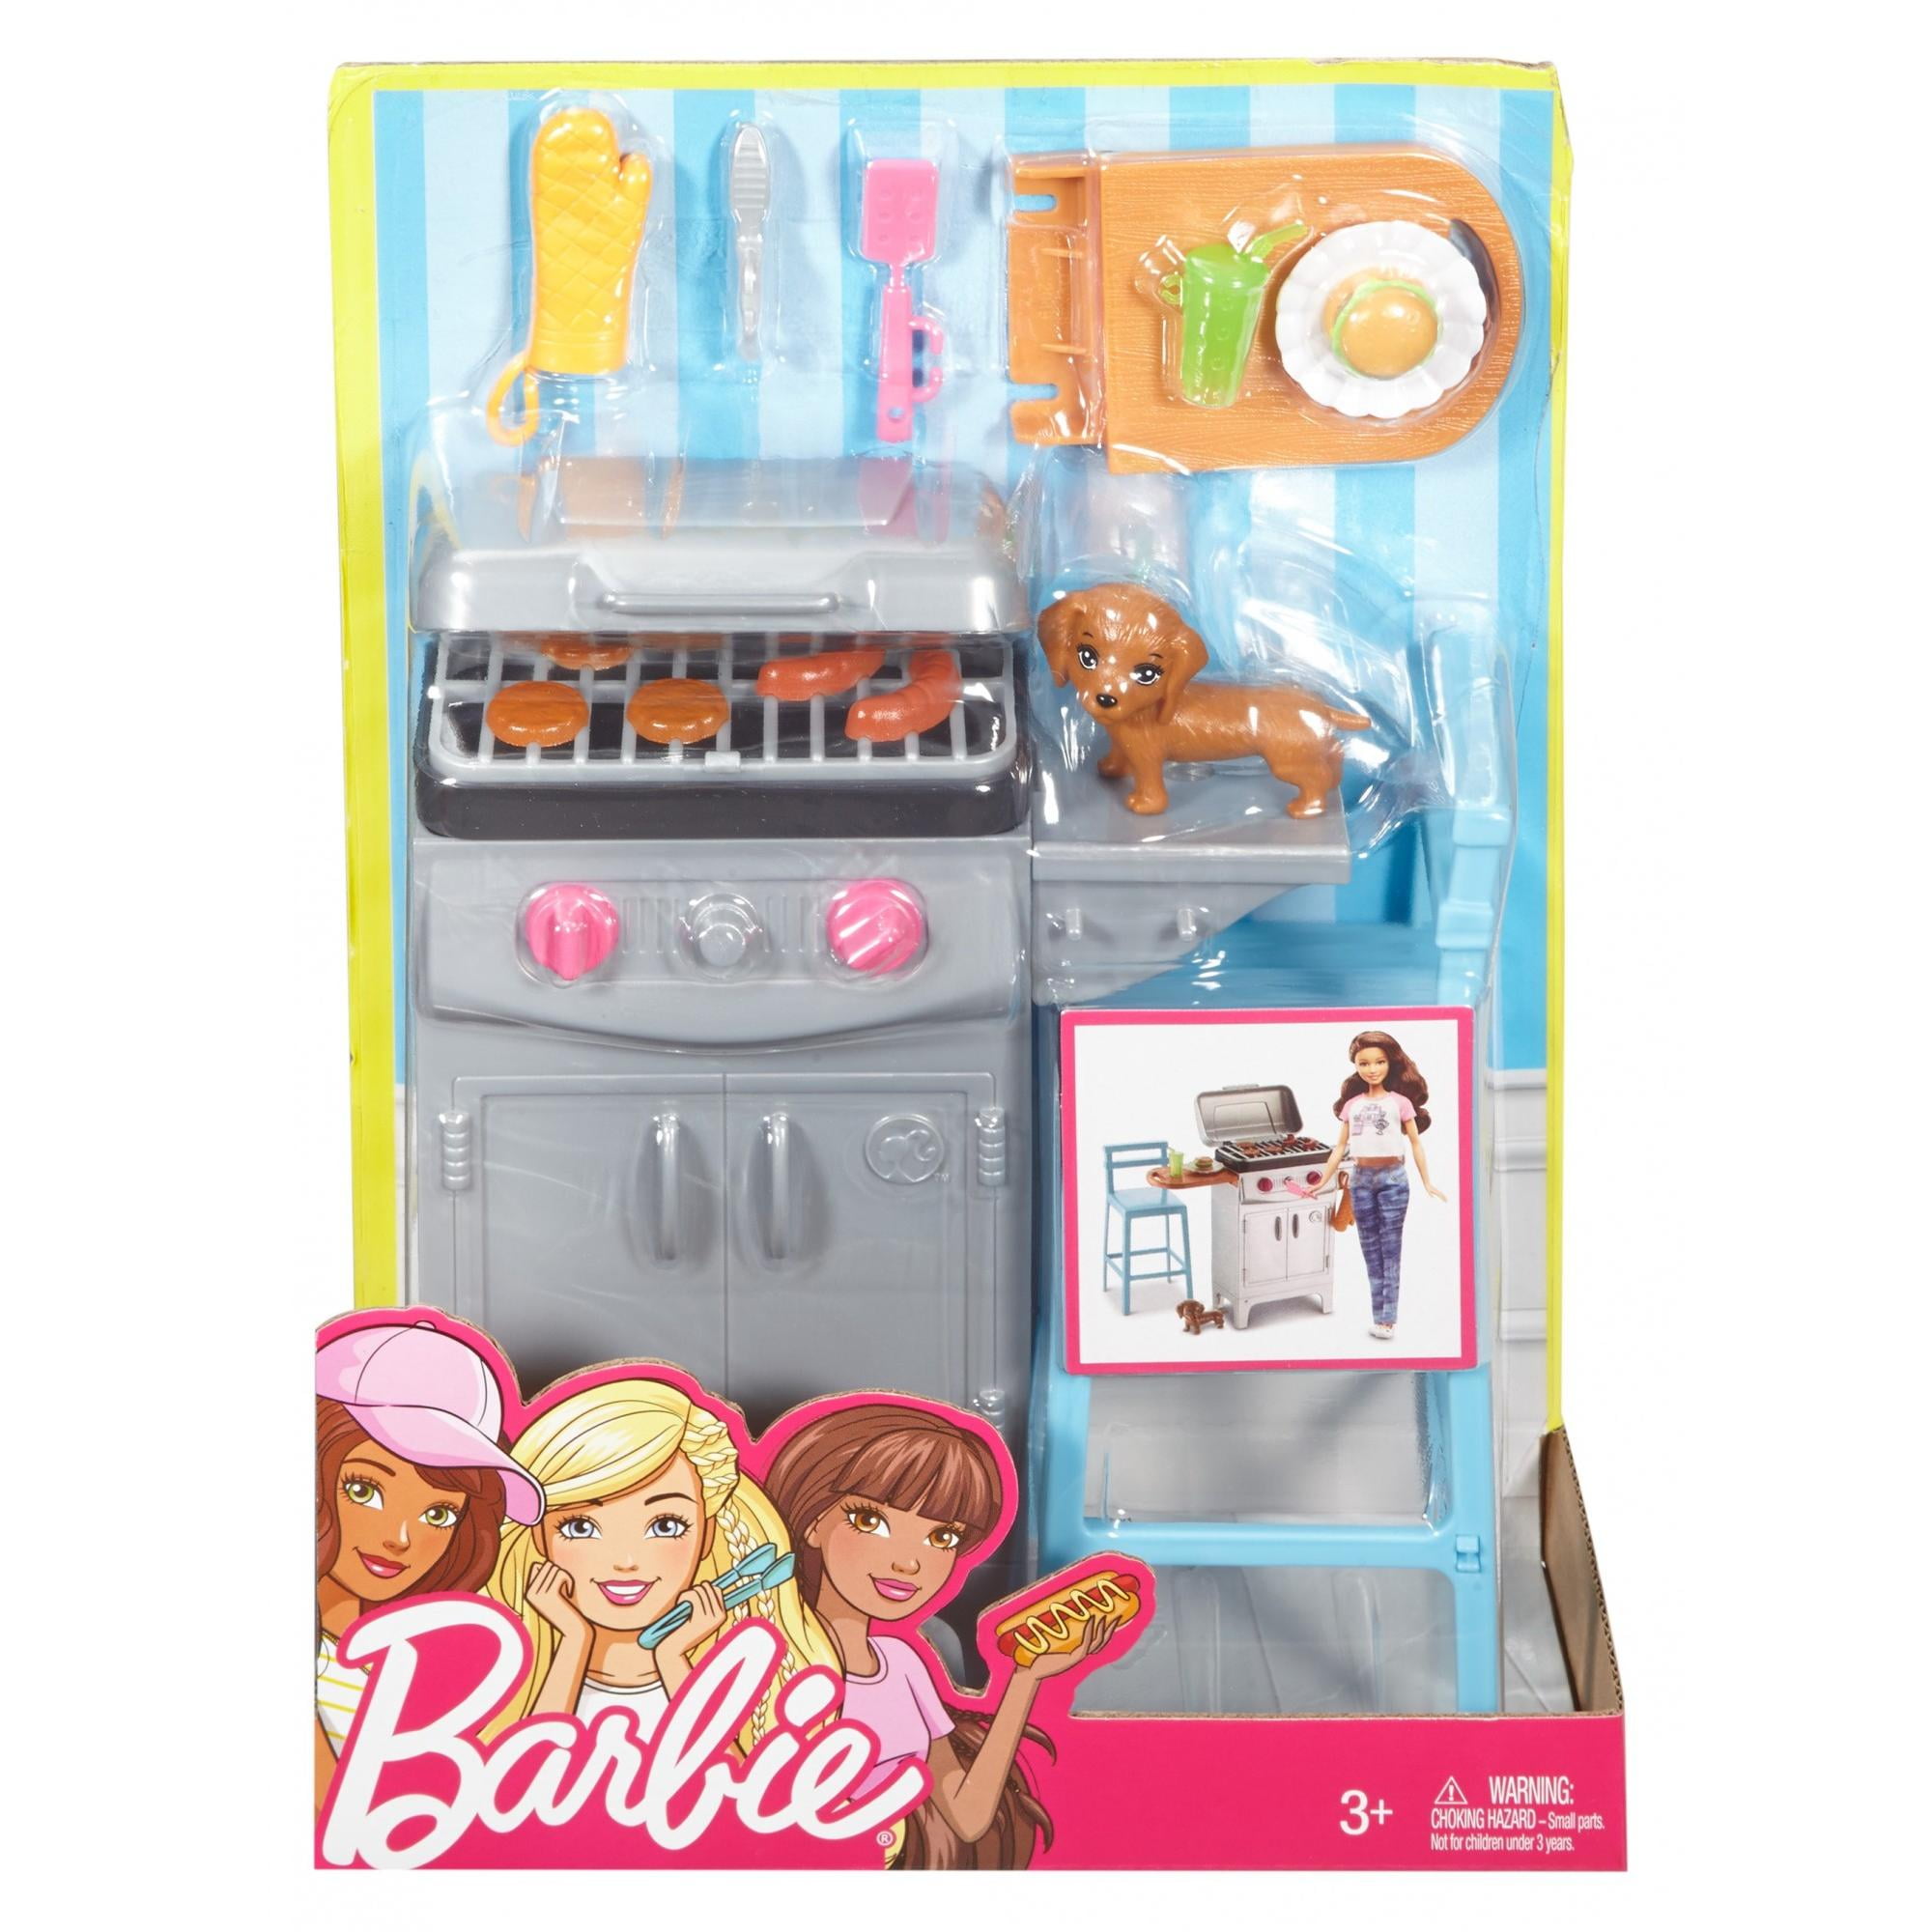 barbie bbq set